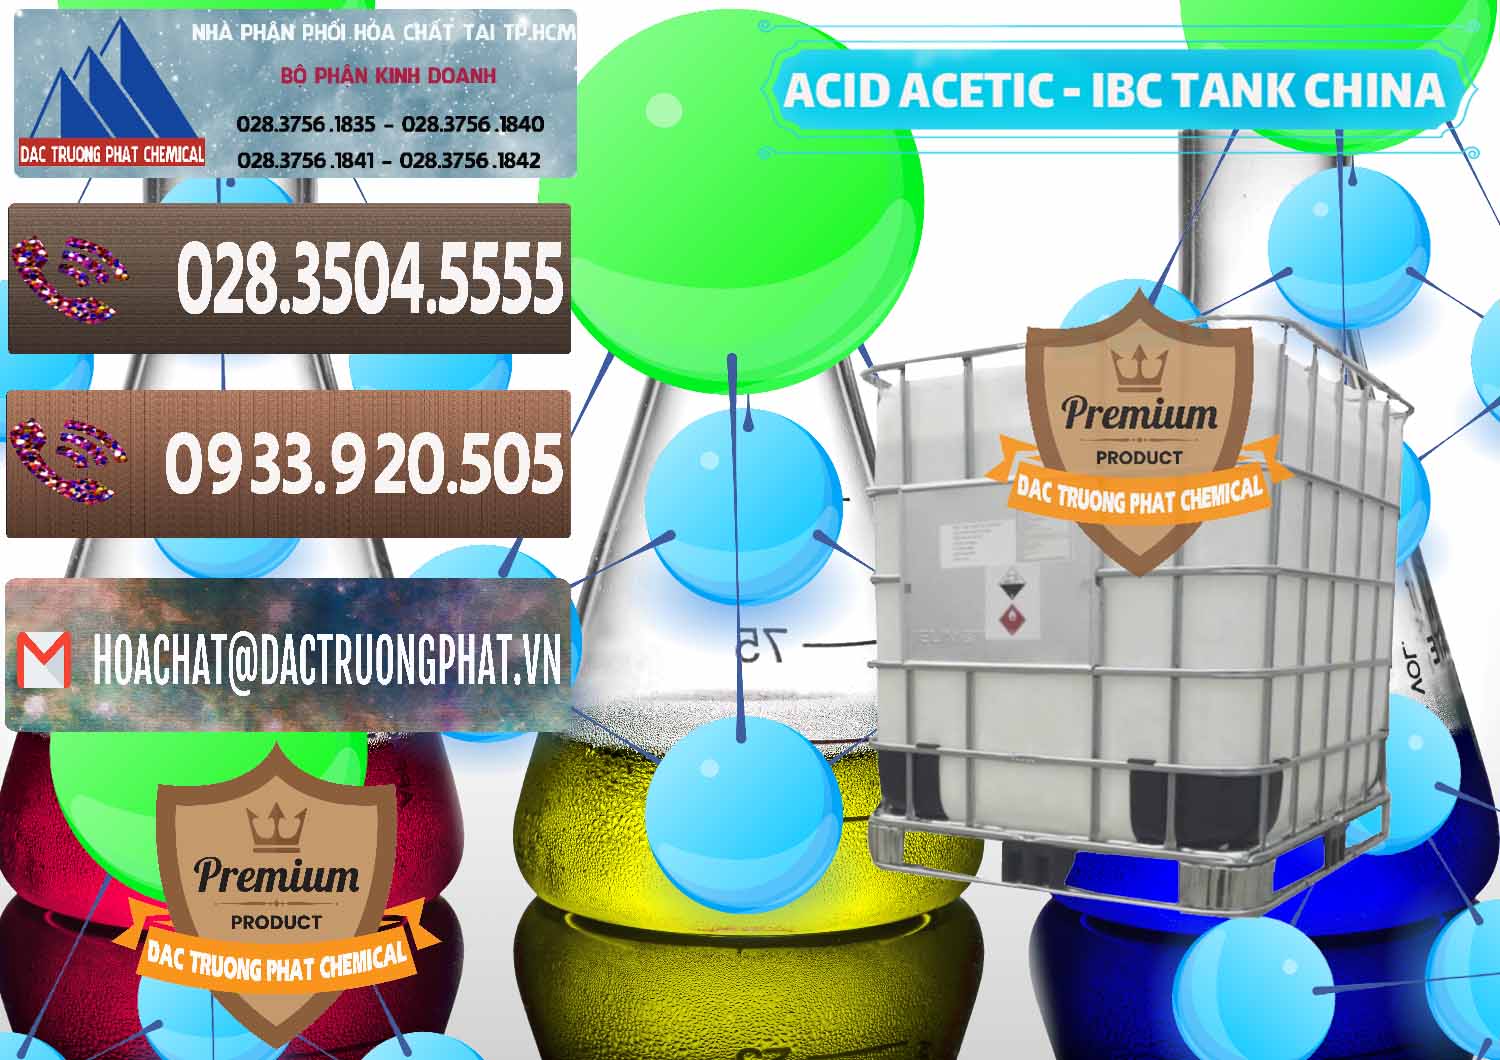 Cty bán _ cung cấp Acetic Acid – Axit Acetic Tank Bồn IBC Trung Quốc China - 0443 - Phân phối & cung cấp hóa chất tại TP.HCM - hoachatviet.net